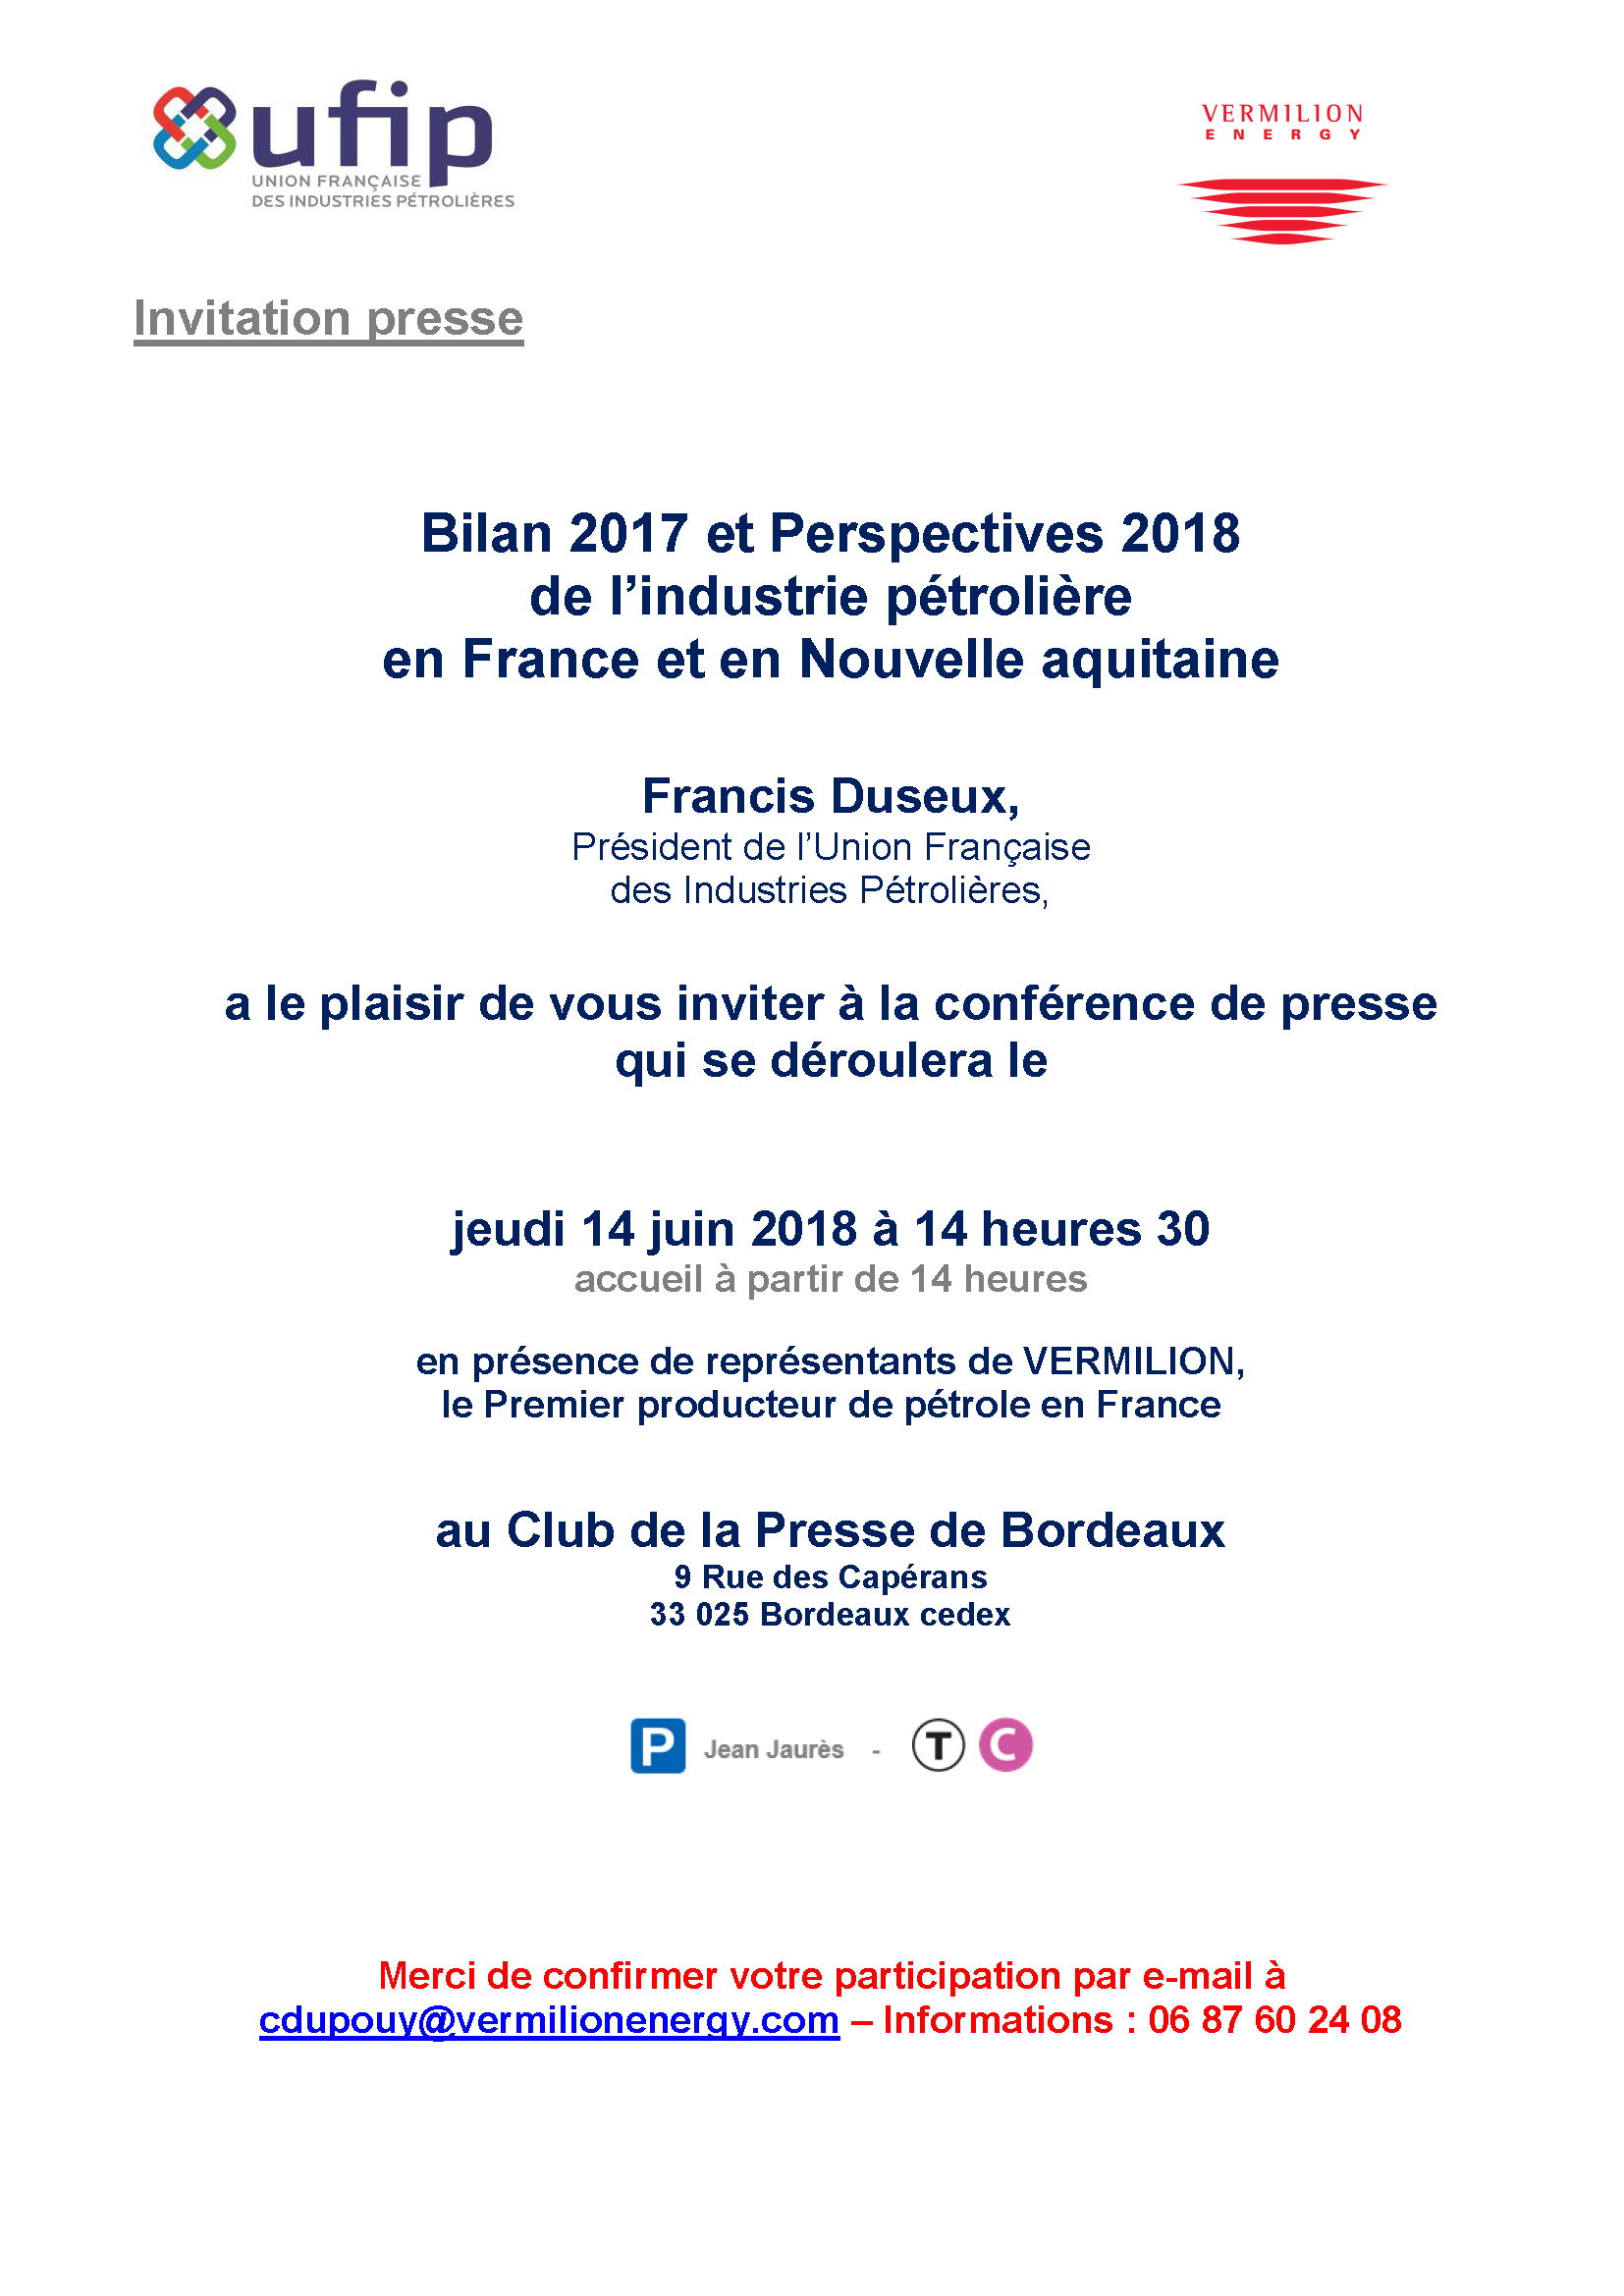 invitation-conference-presse-ufip-vrm-a-bordeaux-14juin18-v1_